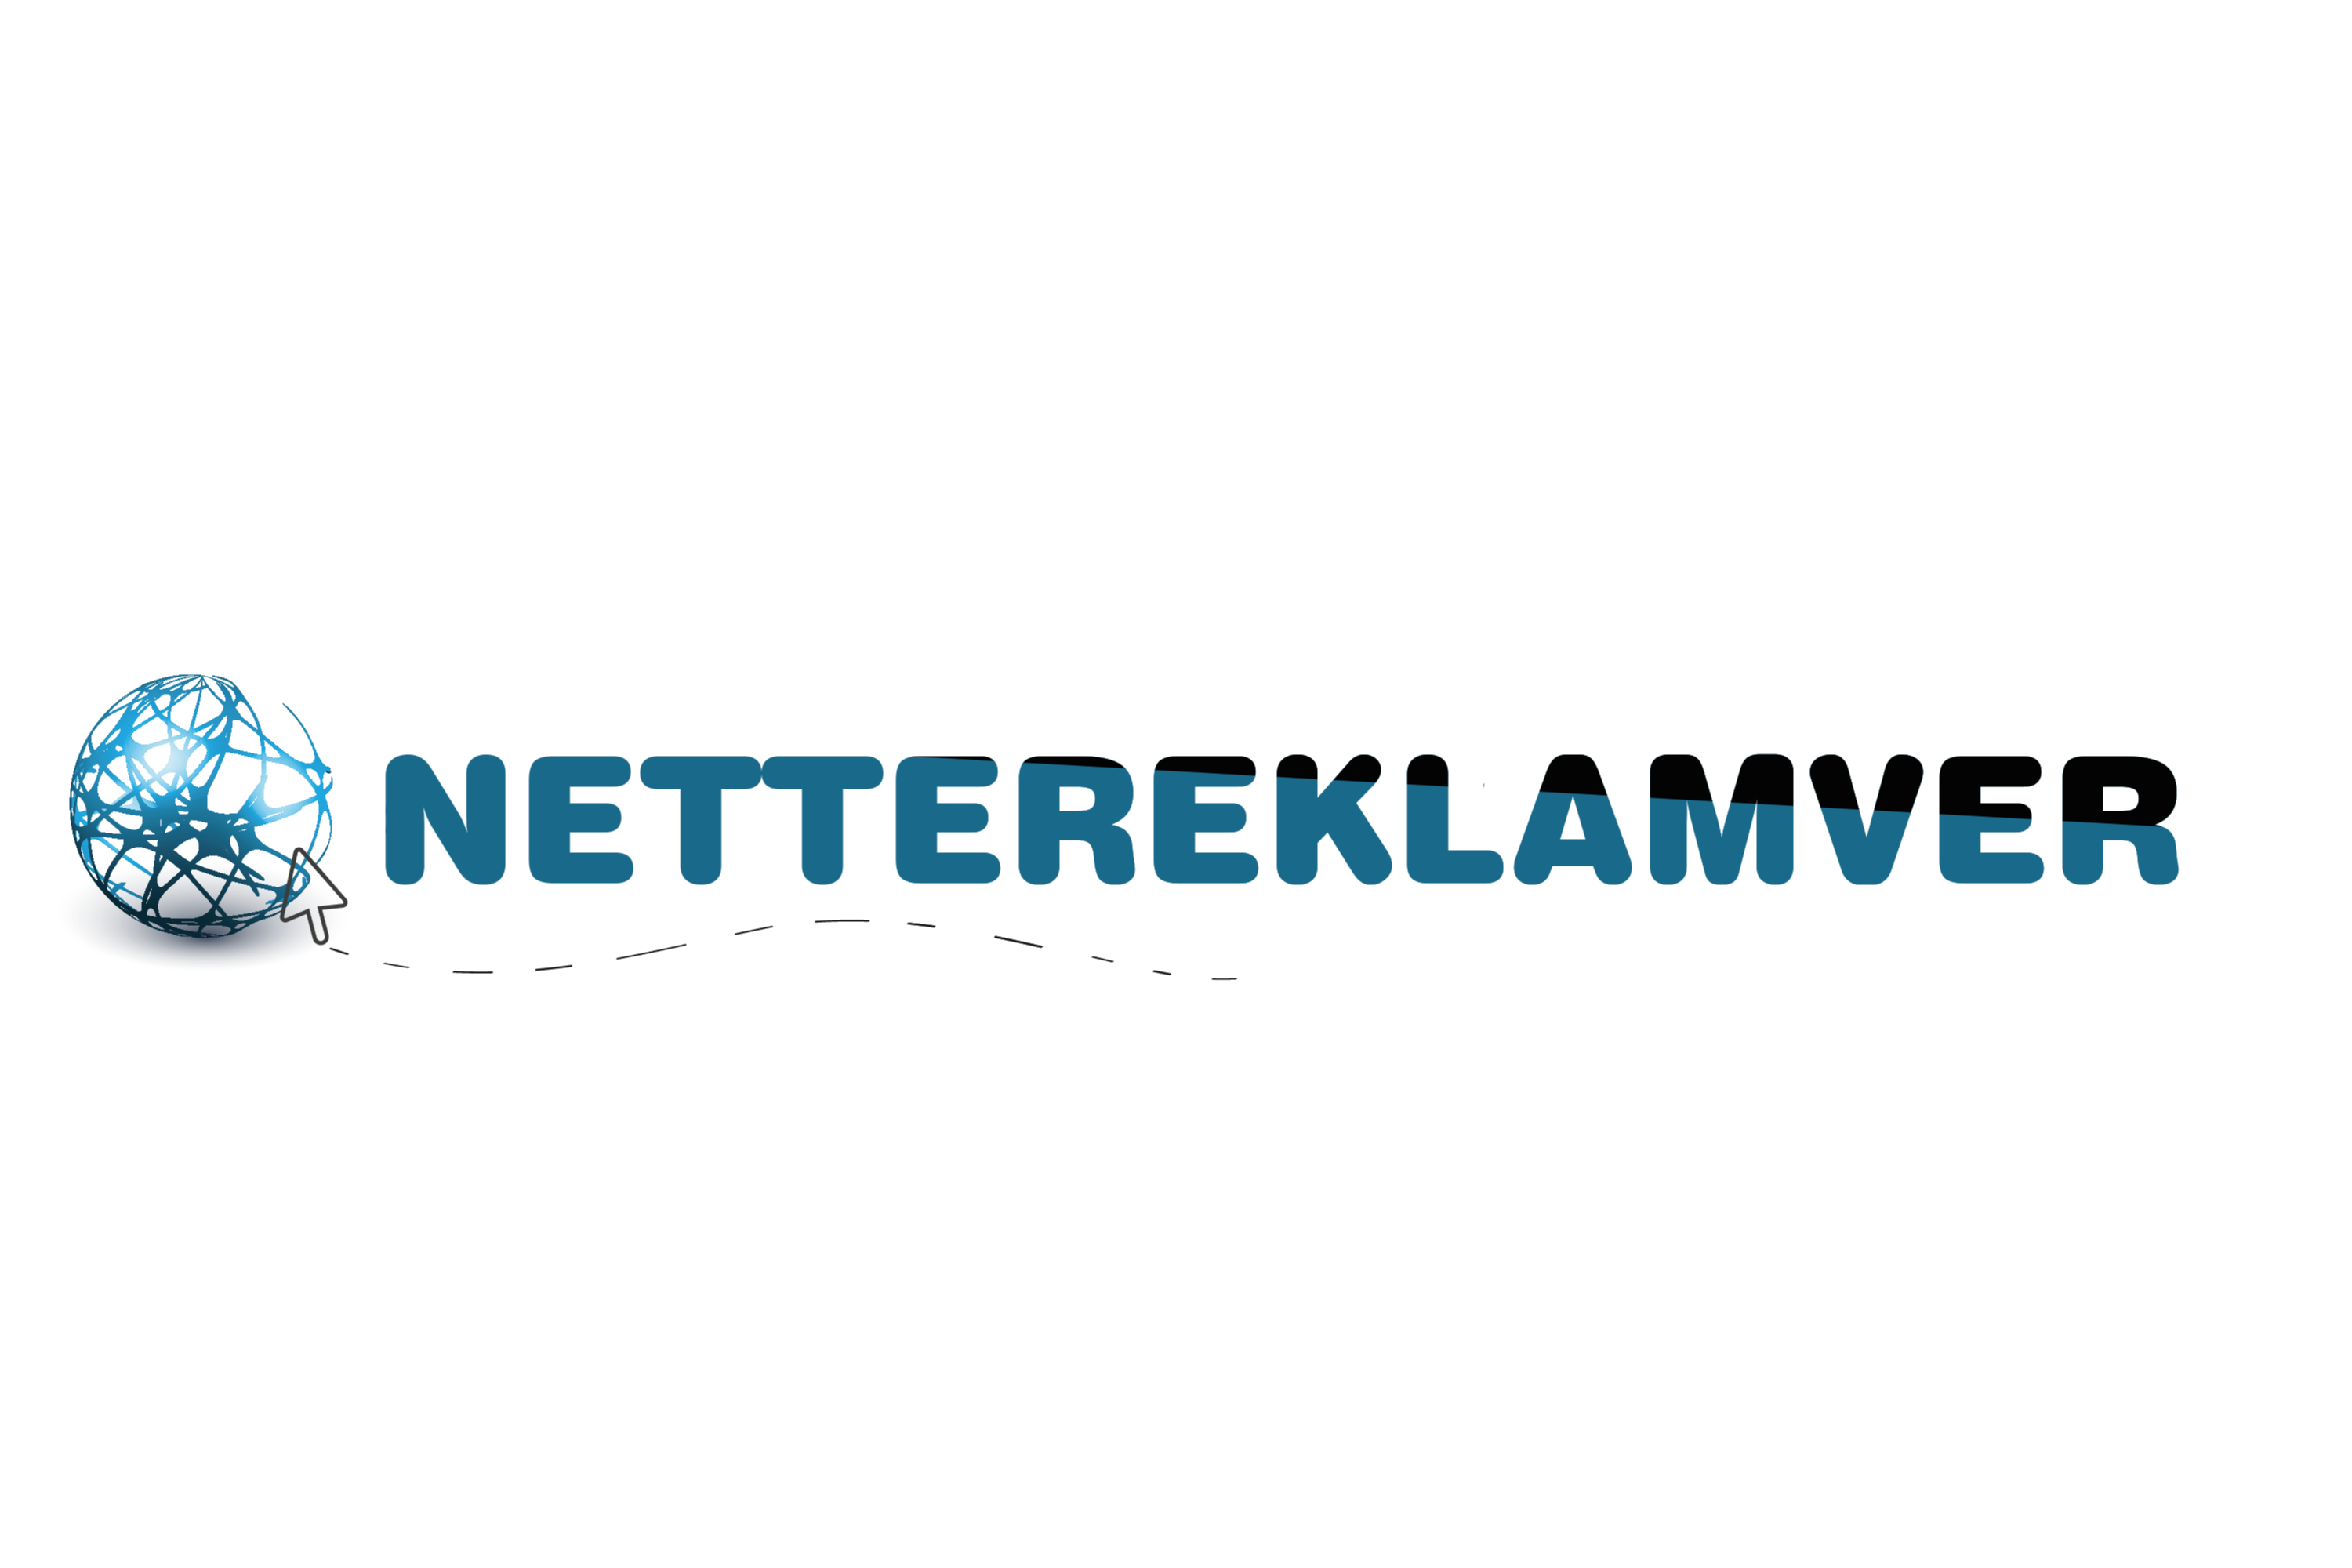 NETTE-REKLAM-VER-Logo